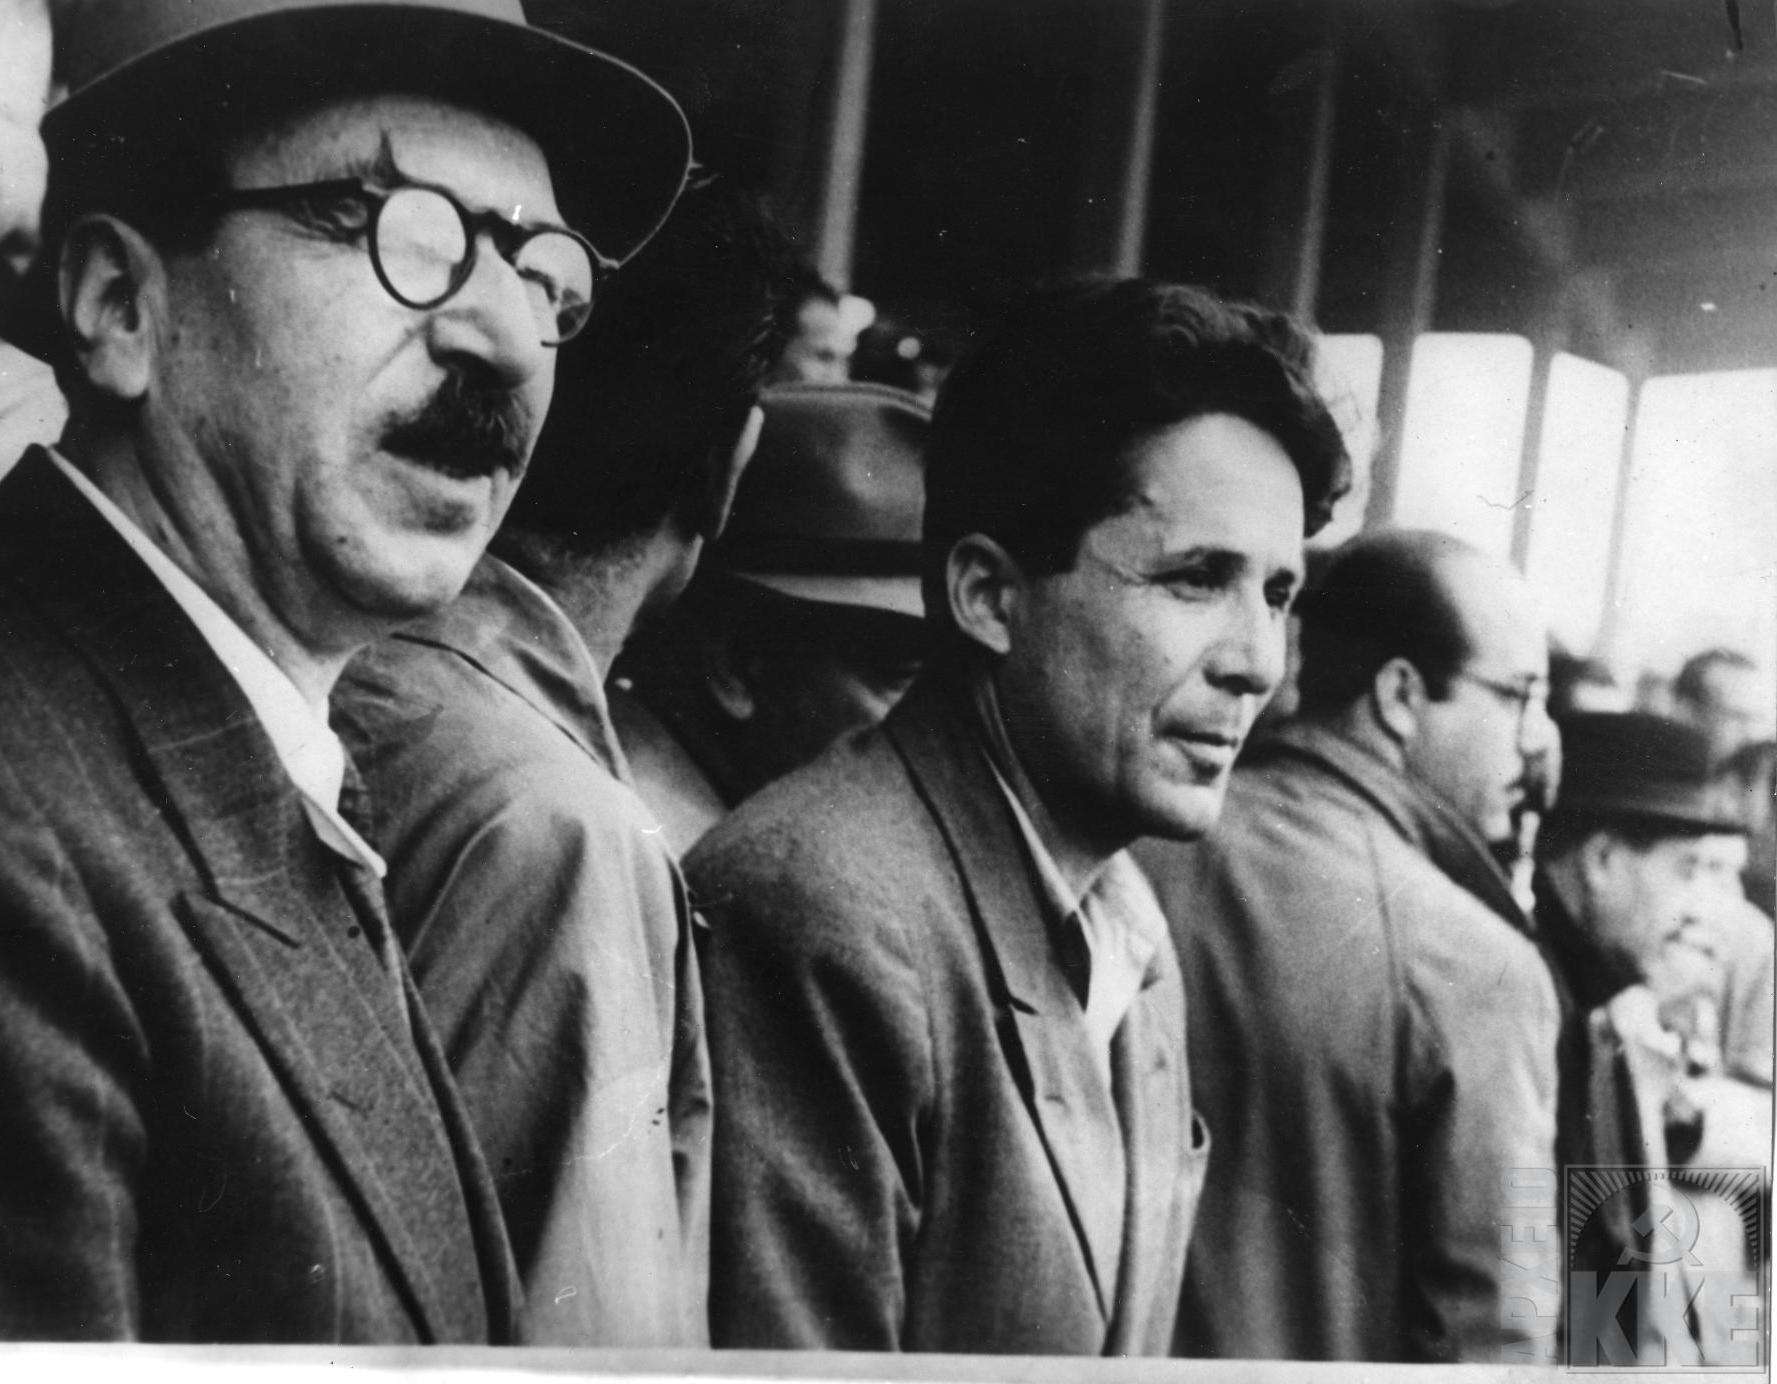 Κατά το πνεύμα της ρητορικής του για μια ειρηνική λύση του ελληνικού πολιτικού ζητήματος, ο Νίκος Ζαχαριάδης (δεξιά) στράφηκε το 1945 κατά του ΝΟΦ (Λαϊκό Απελευθερωτικό Μέωπο), της διάδοχης οργάνωσης του ΣΝΟΦ που προπαγάνδιζε τη συνένωση του «μακεδονικού λαού» και δρούσε ανεξέλεγκτα στην ελληνική Μακεδονία.